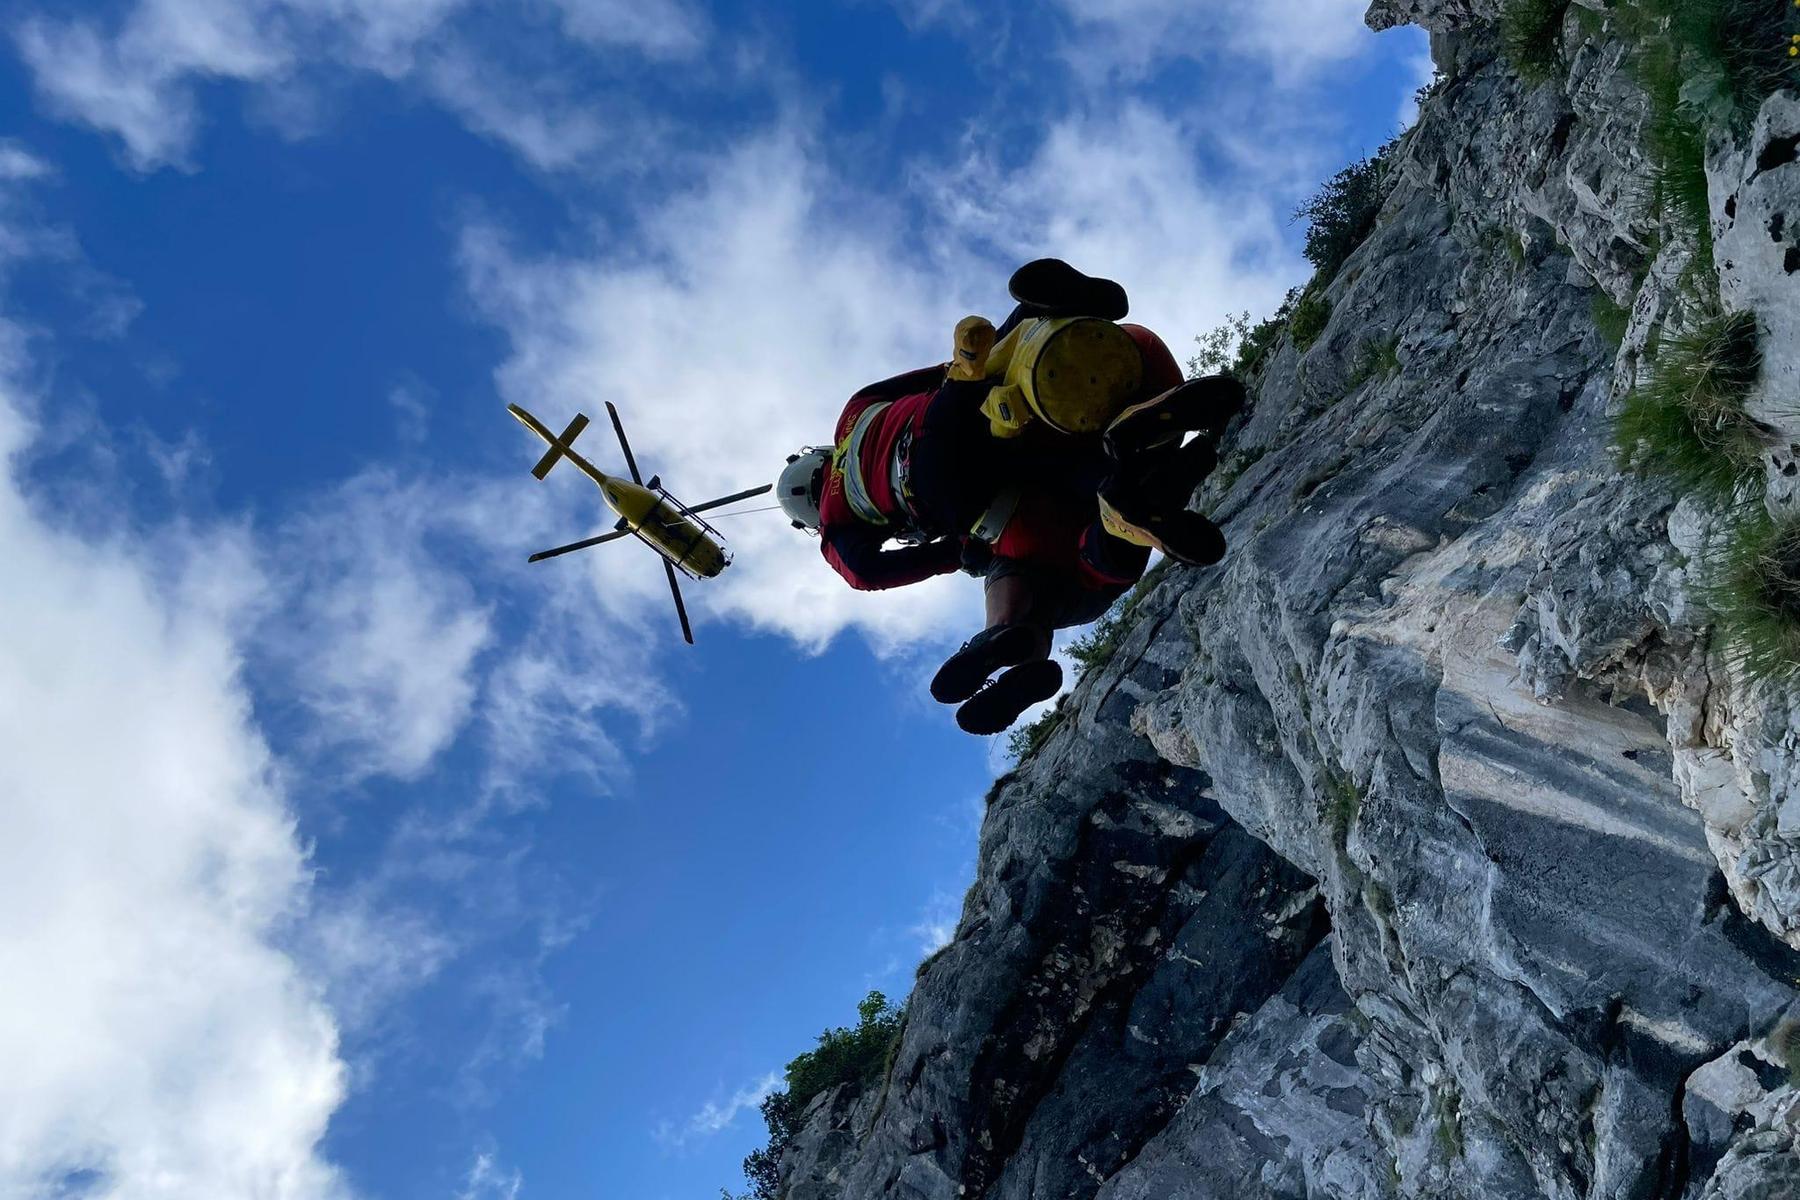 Gesäuse: Akute Steinschlaggefahr: Wanderer mit Hubschrauber vom Berg geholt